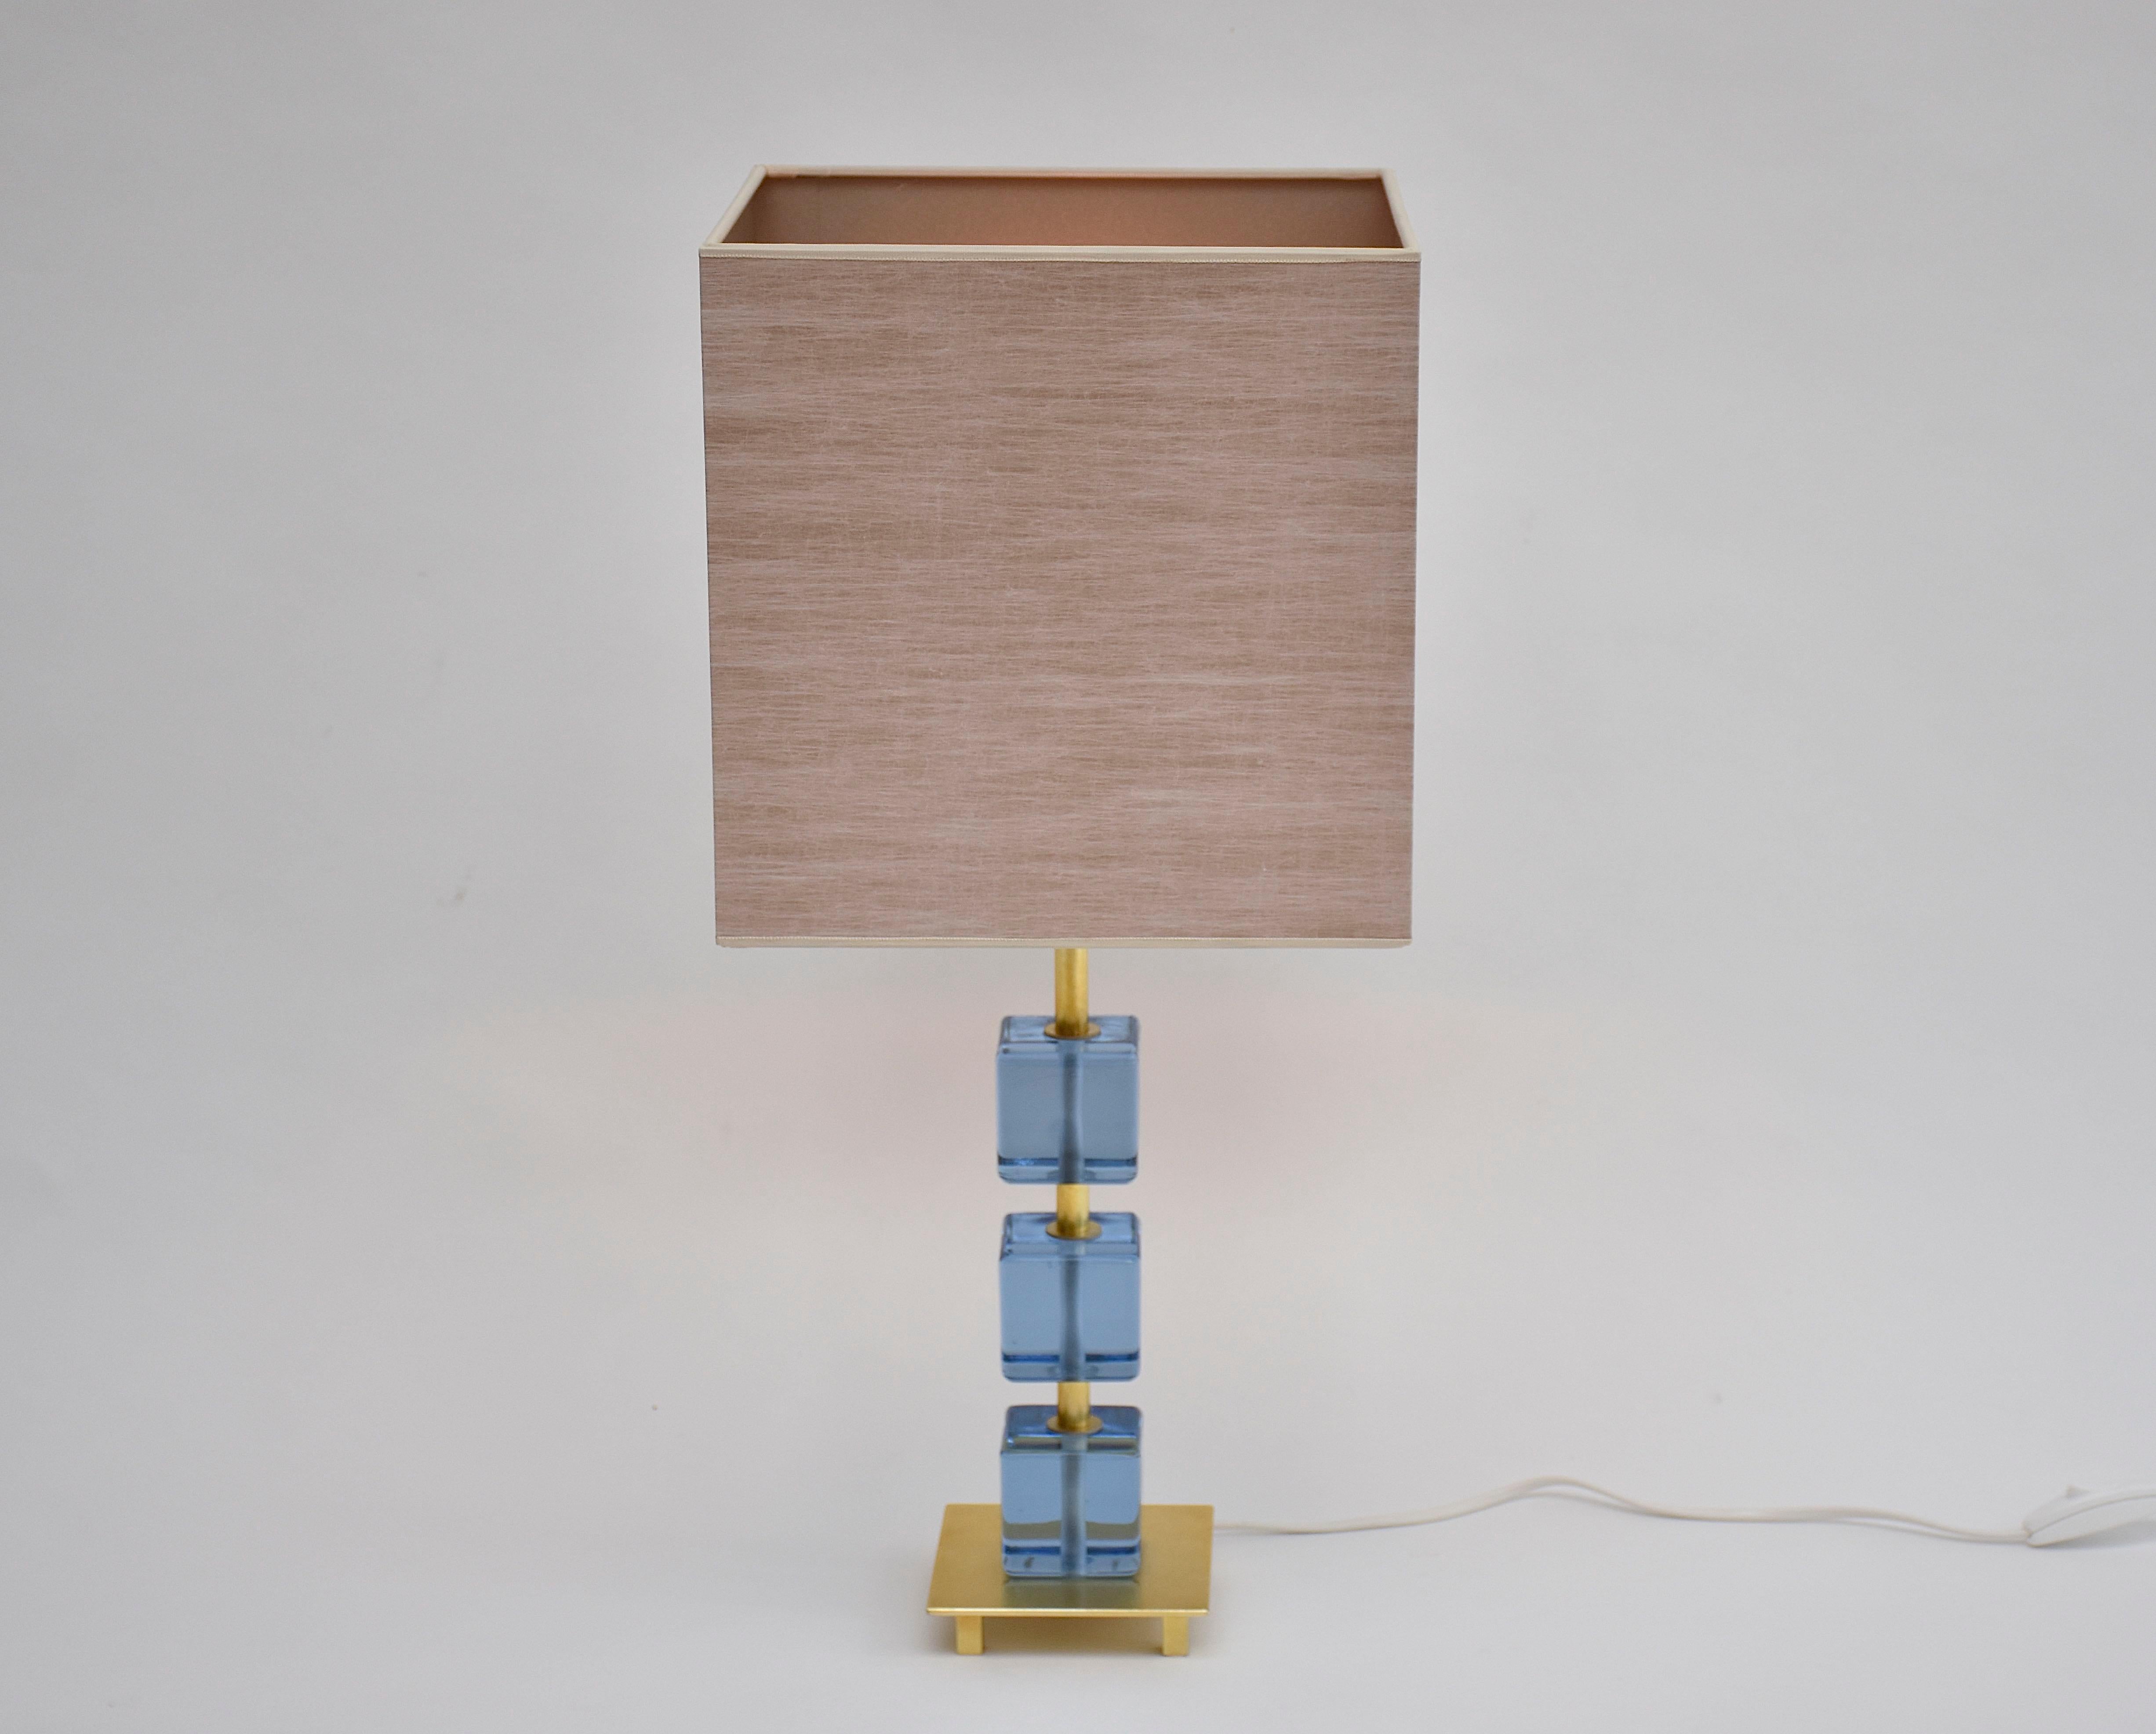 Schöne schwedische Tischlampe mit 3 weichen blauen Glasblöcken.
Die Lampe wurde ca. 1960 in Malmö, Schweden, hergestellt.
Einschließlich eines neuen, hochwertigen, handgefertigten Lampenschirms.

Die Höhe der Lampe wird einschließlich des Schirms